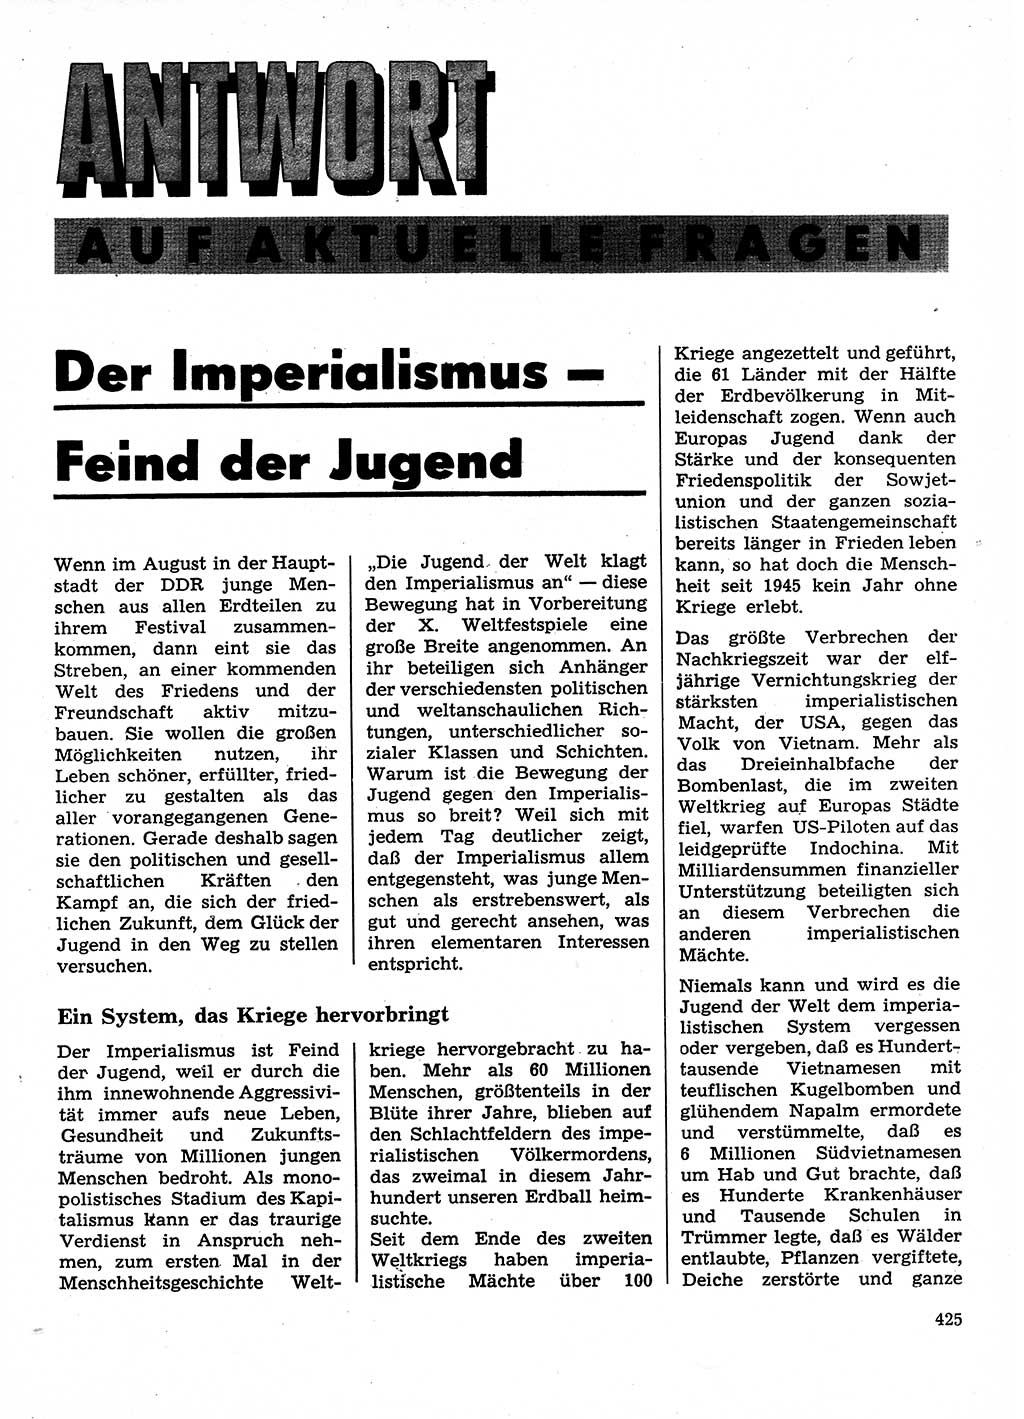 Neuer Weg (NW), Organ des Zentralkomitees (ZK) der SED (Sozialistische Einheitspartei Deutschlands) für Fragen des Parteilebens, 28. Jahrgang [Deutsche Demokratische Republik (DDR)] 1973, Seite 425 (NW ZK SED DDR 1973, S. 425)